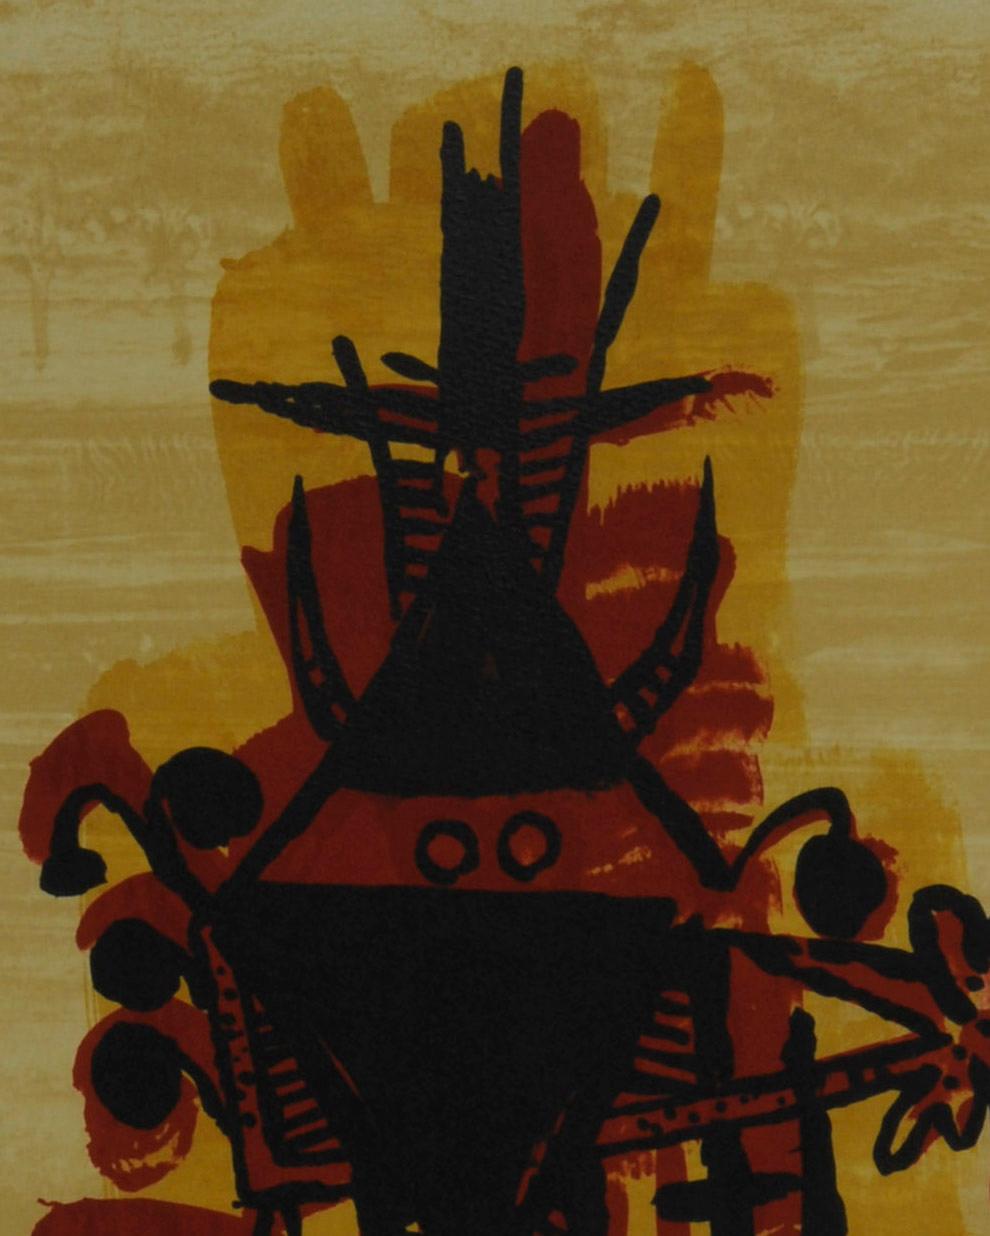 El Ultimo viaje del buque fantasma, Plate X - Print by Wifredo Lam